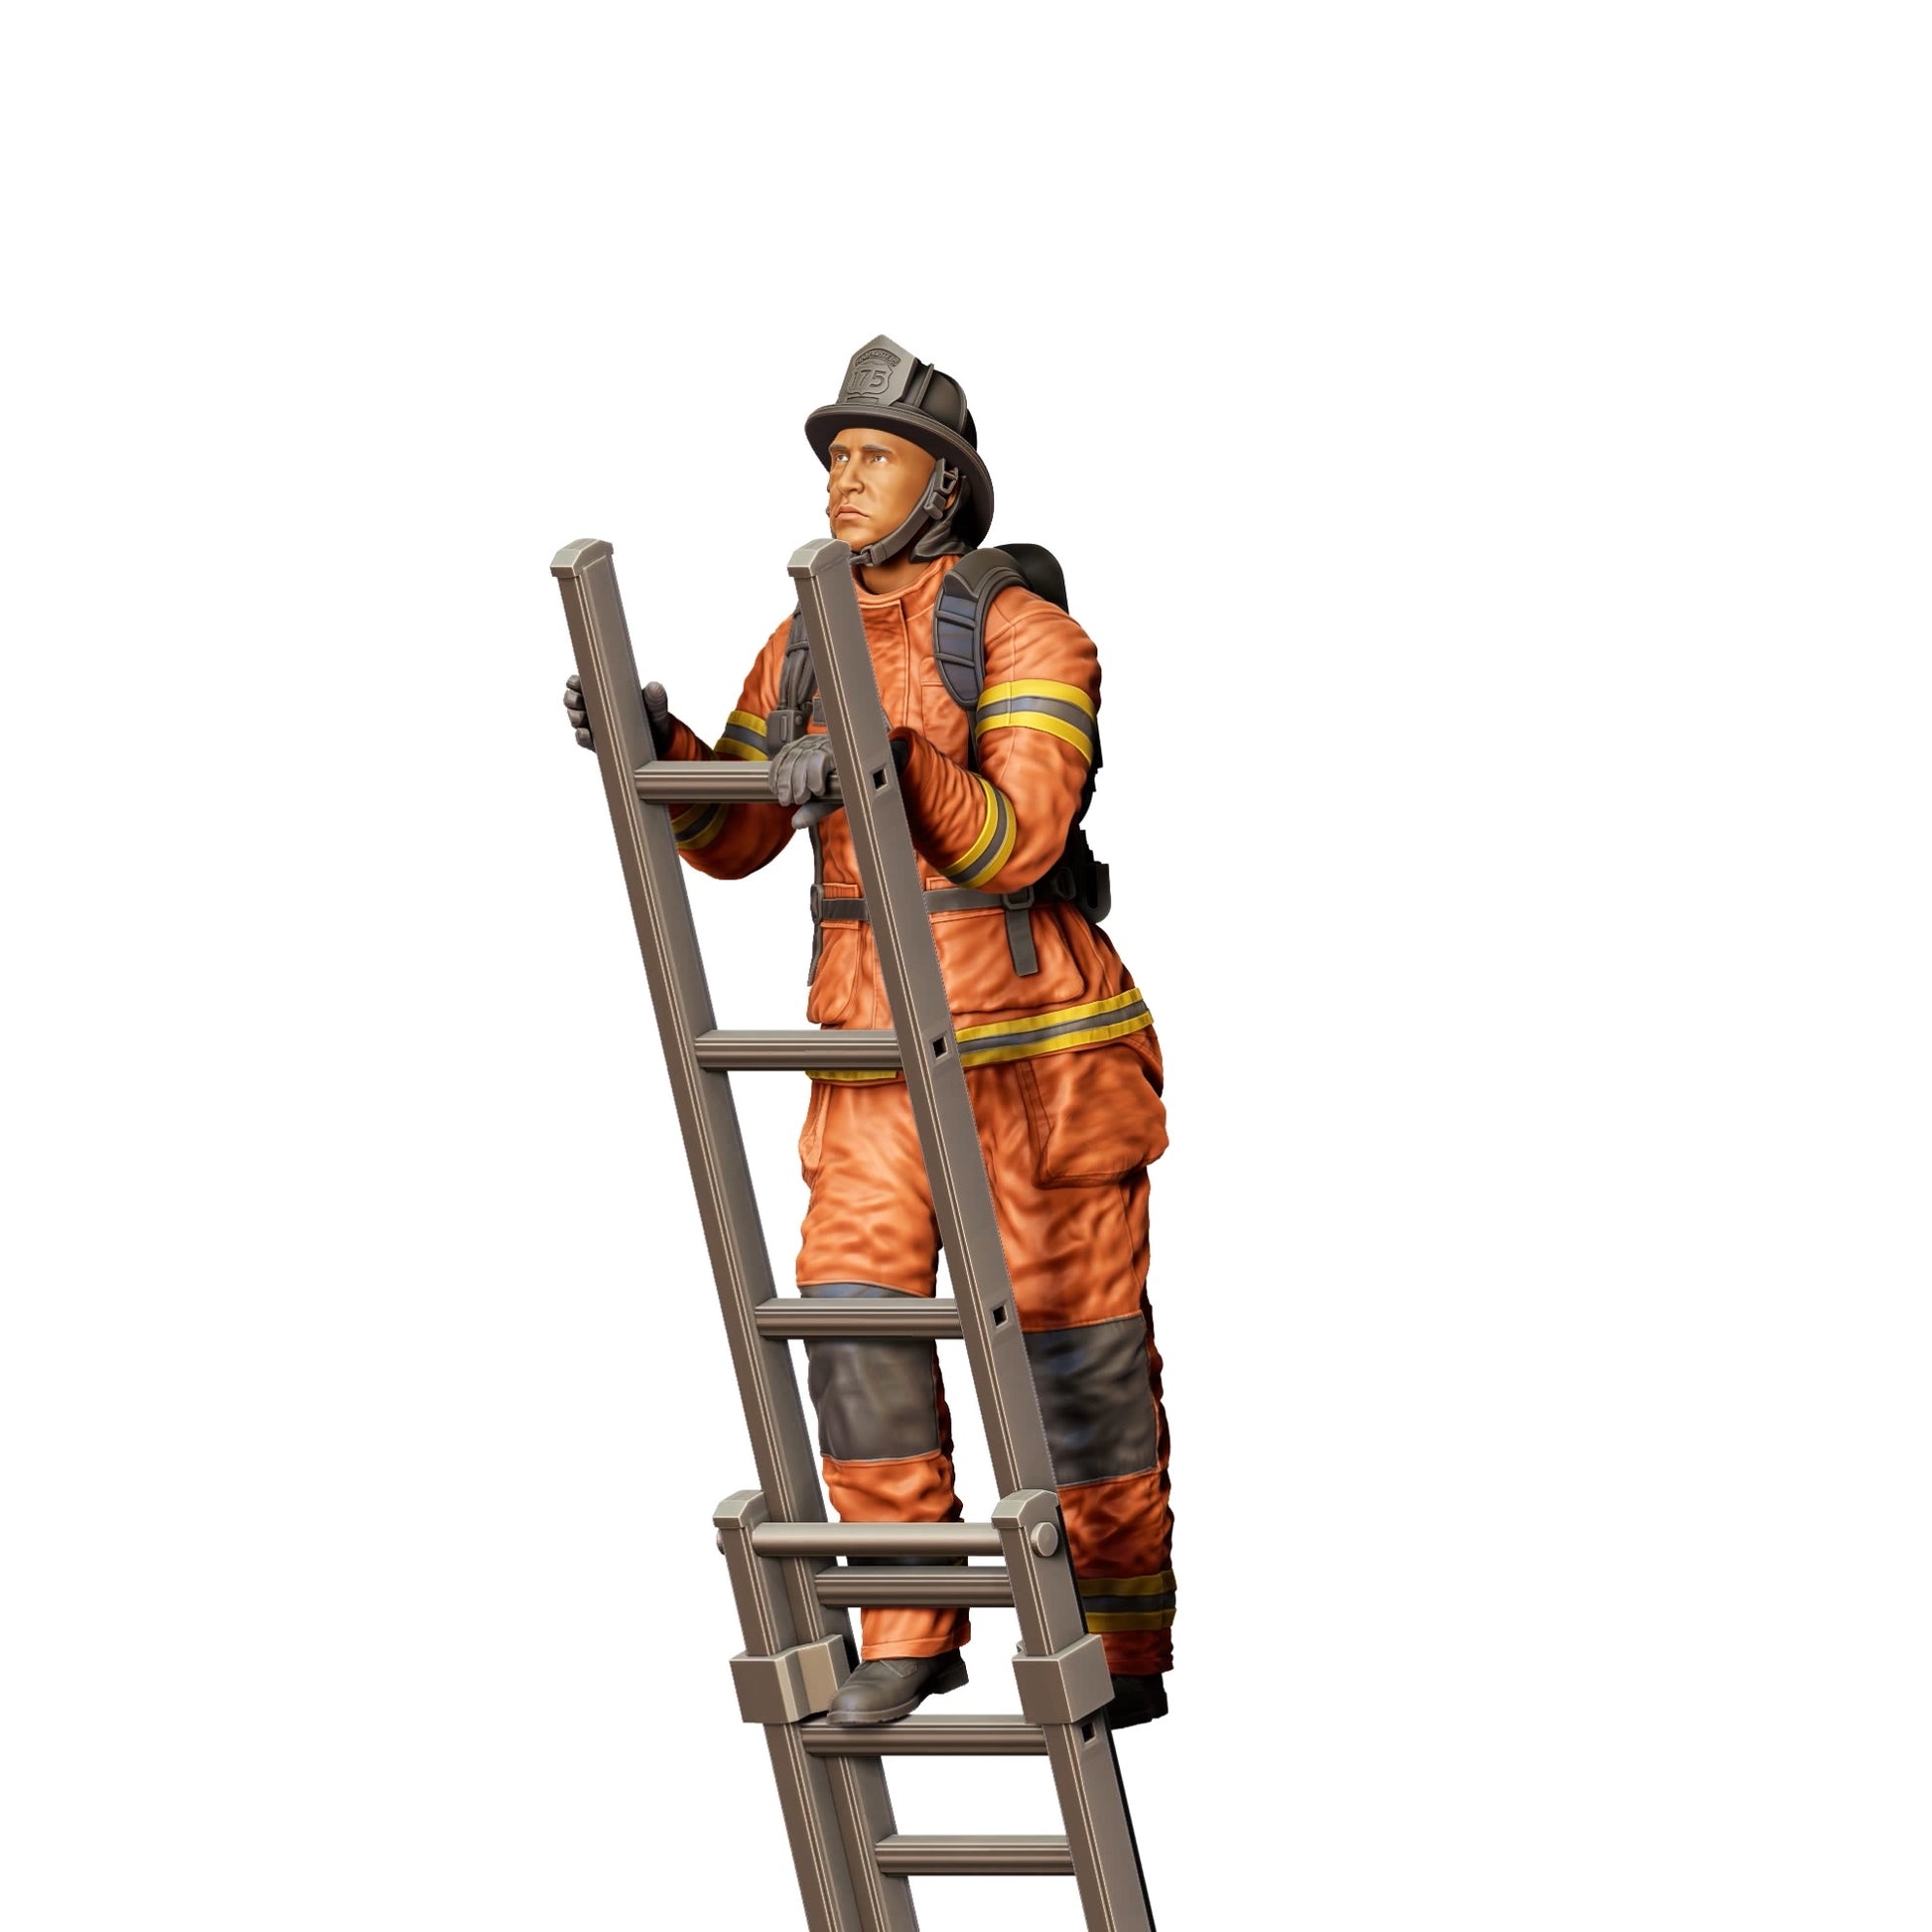 Diorama Modellbau Produktfoto 0: Feuerwehrmann Amerikanisch - Klettert Leiter hoch (Ref. Nr. 307)